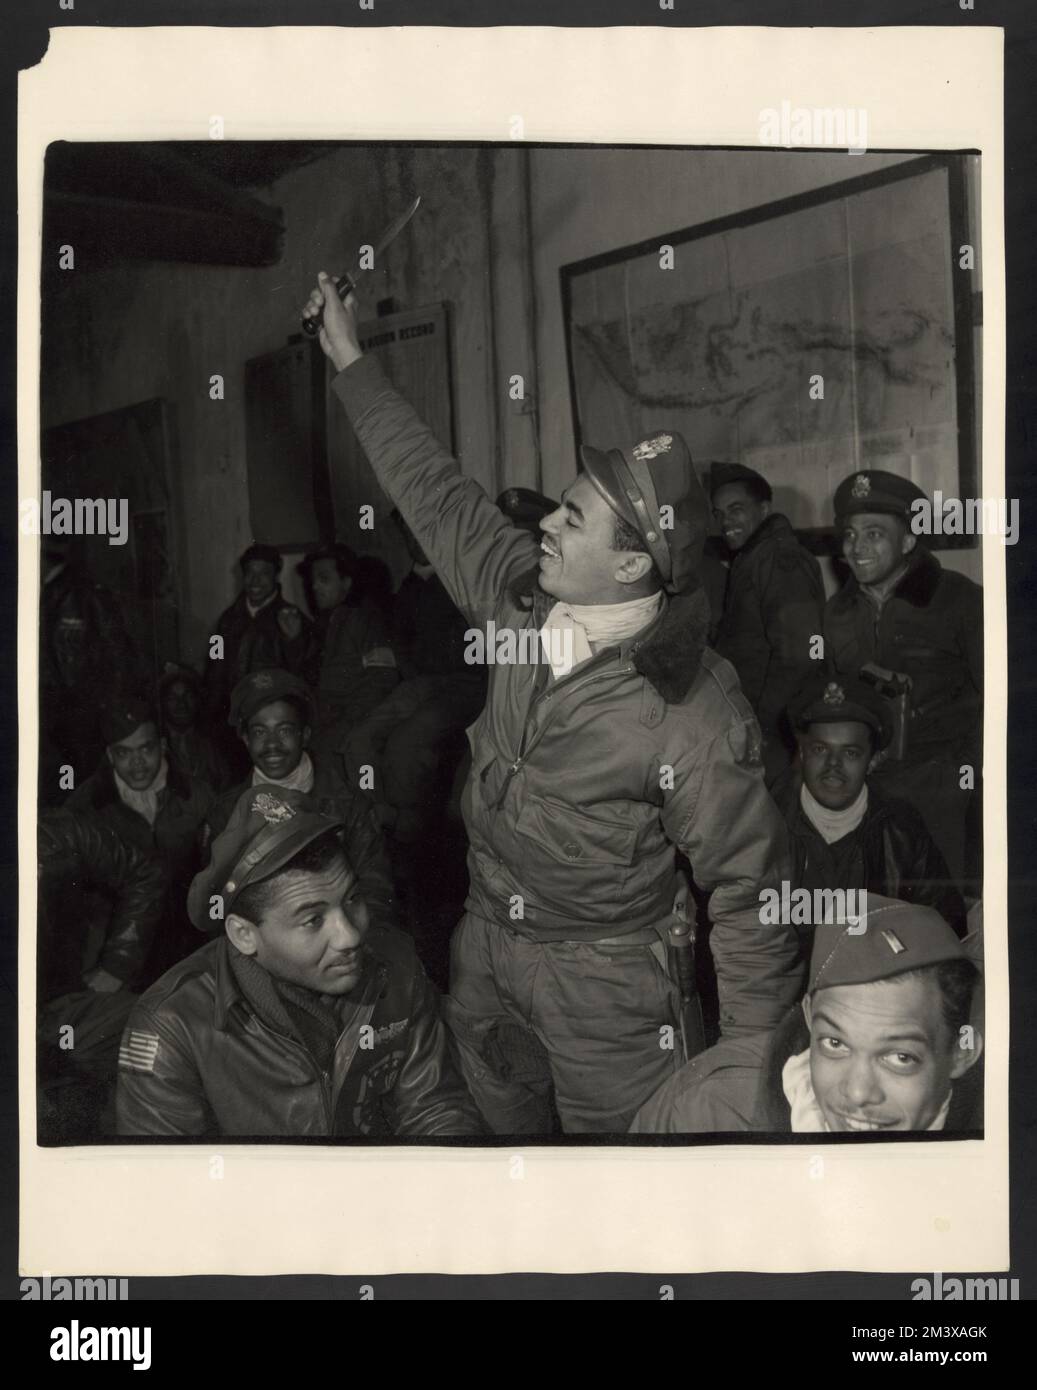 Membres du 332nd Fighter Group dans une salle d'information, Ramitelli, Italie, mars 1945, Toni Frissell, Antoinette Frissell Bacon, Antoinette Frissell Banque D'Images